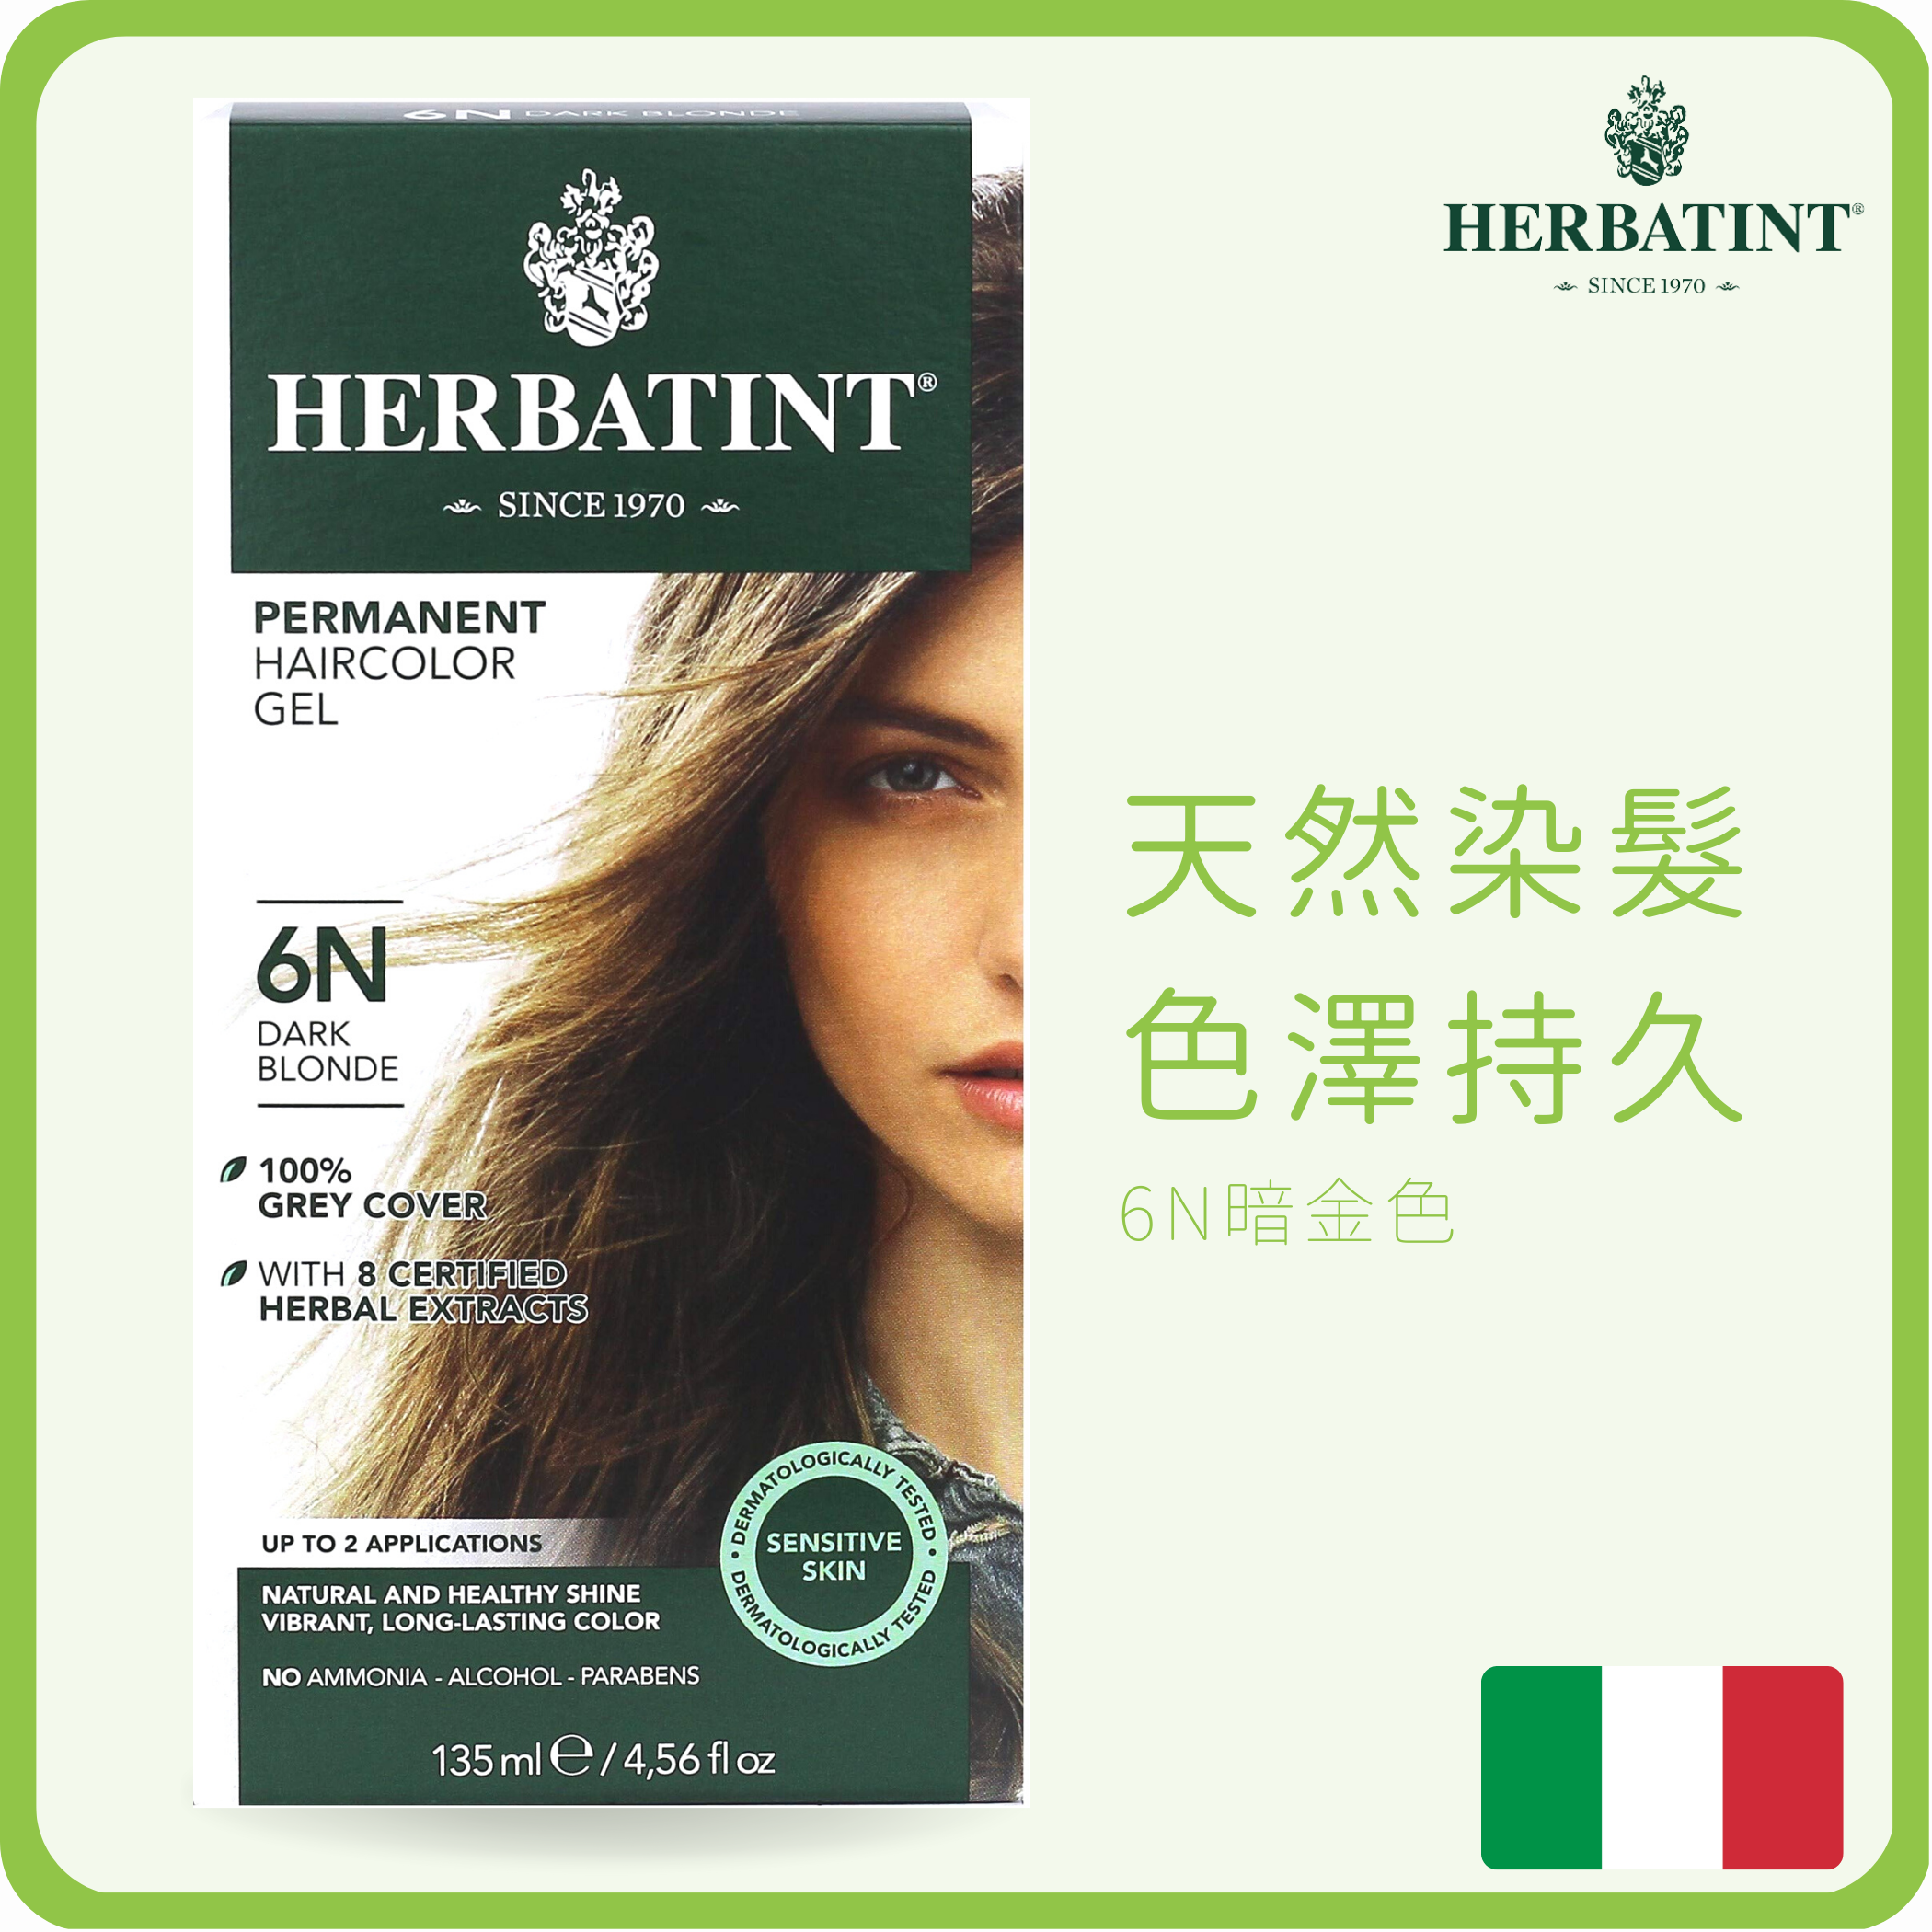 Herbatint 天然草本不掉色染髮劑 (無化學成份)  6N 暗金色 150ml (平行進口)	(無阿摩尼亞|敏感肌適用|遮白髮|染黑髮|天然染髮|草本染髮)